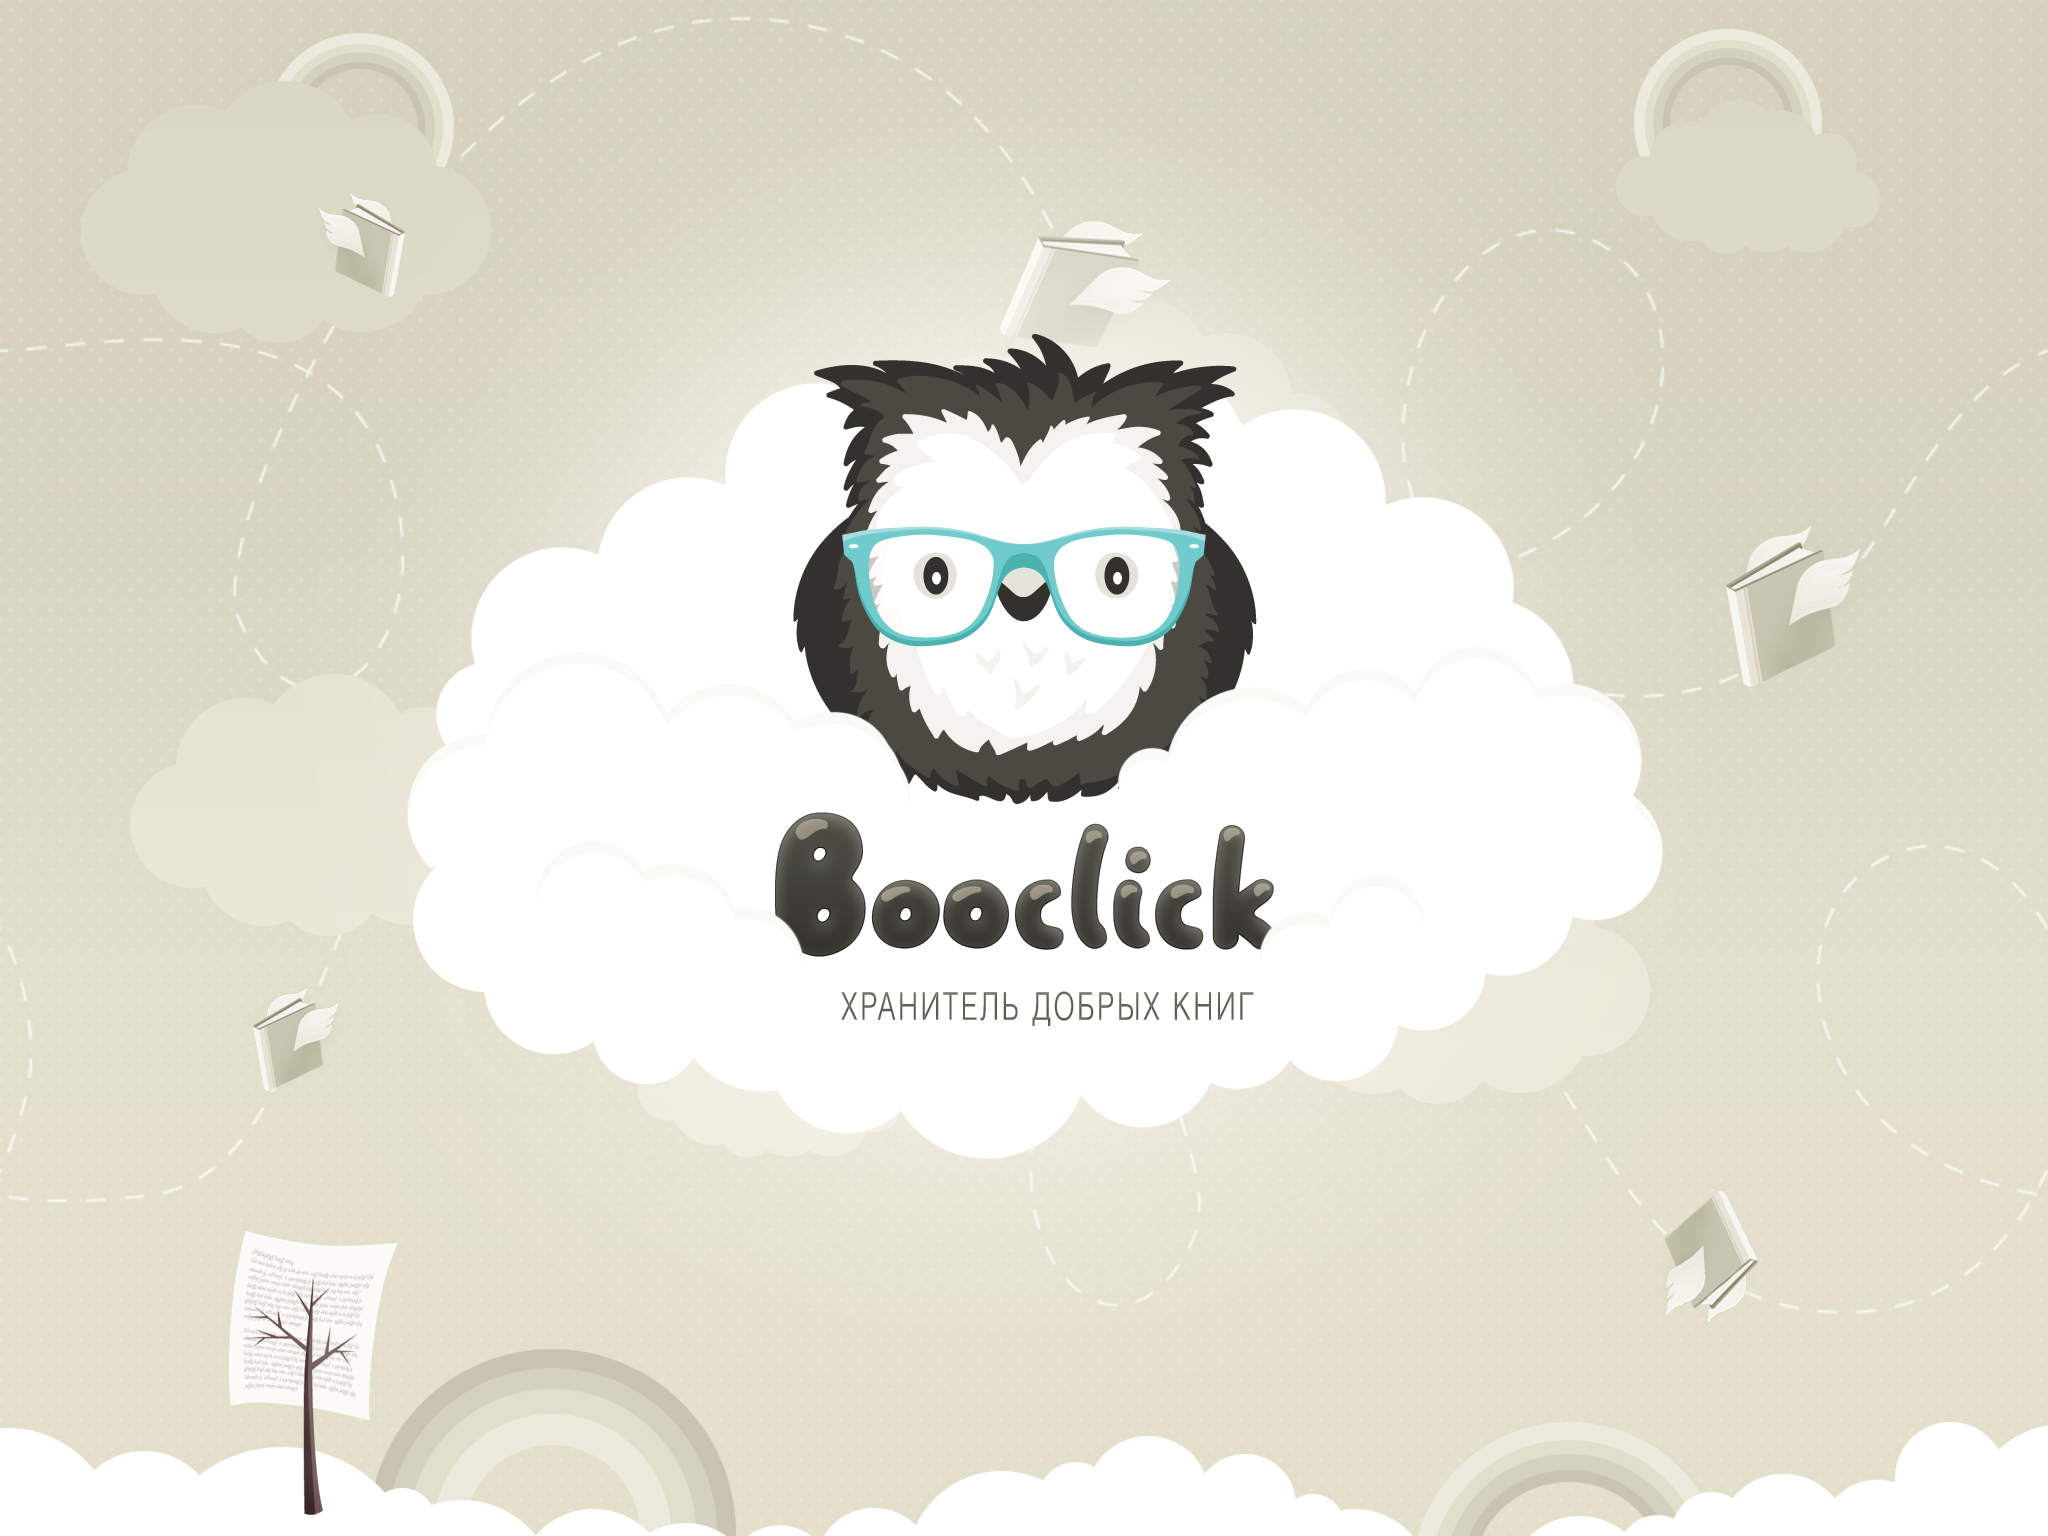 Booclick: подборка качественого контента для детей